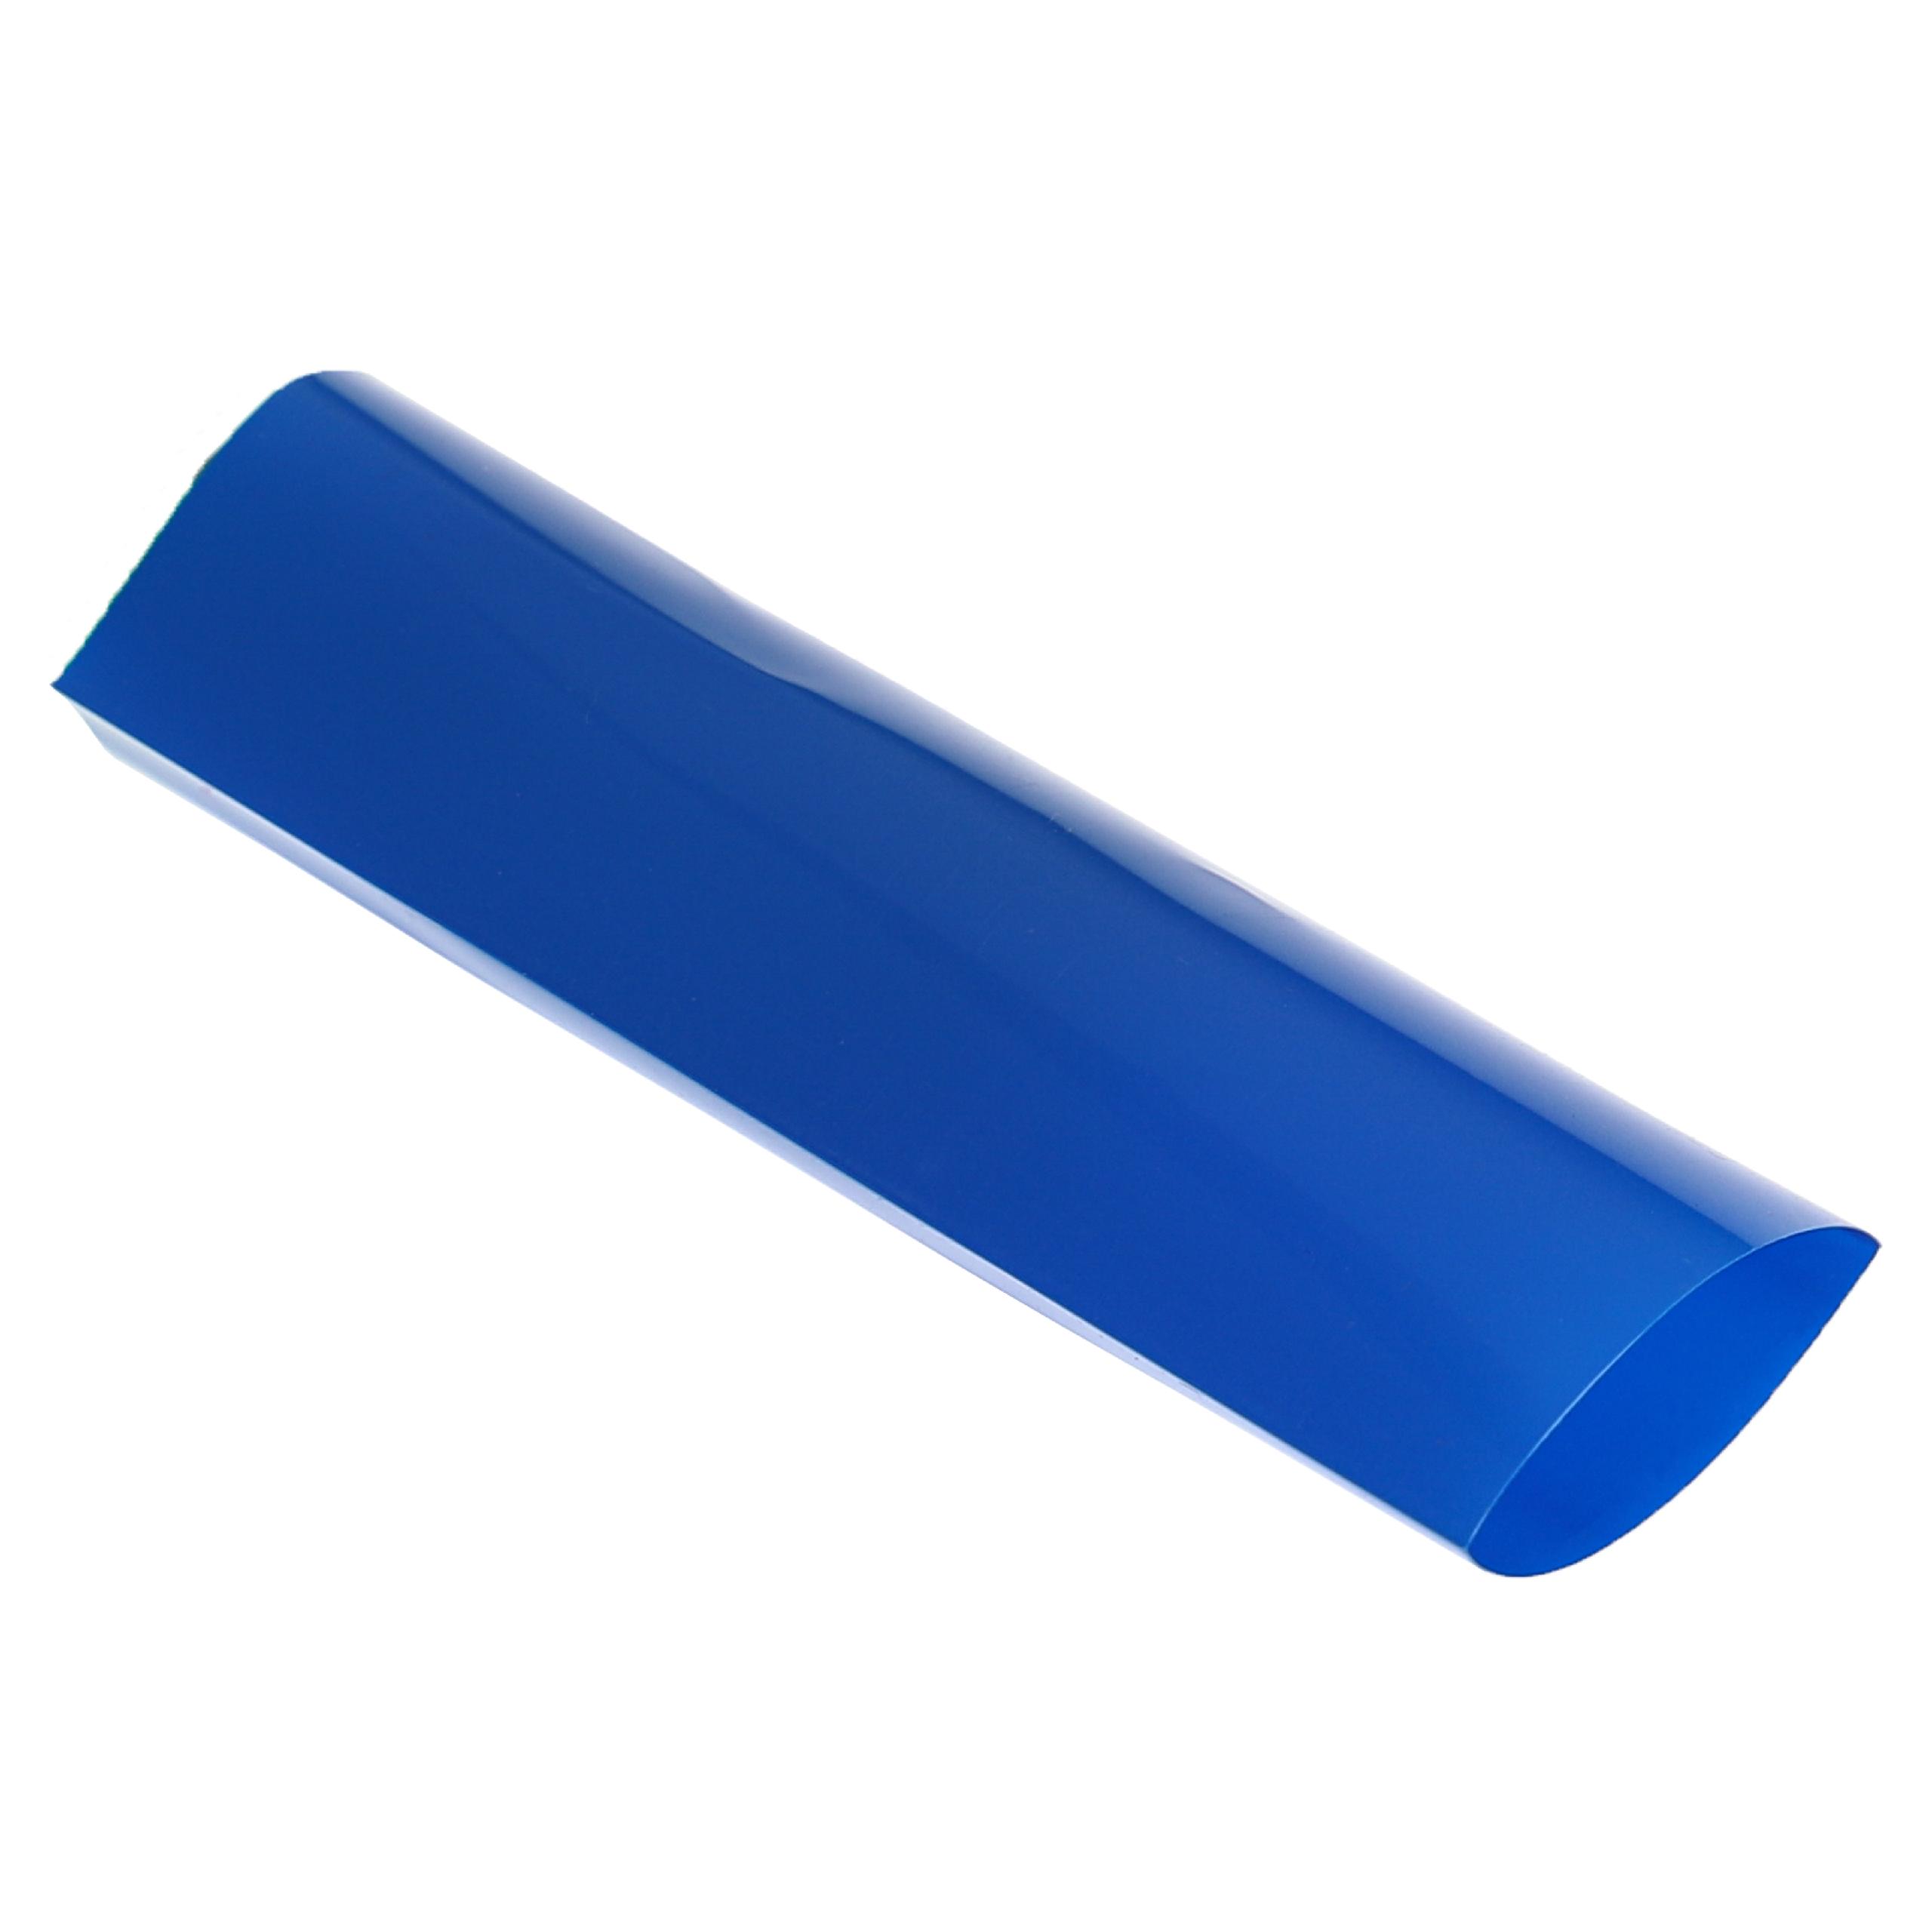 10x tubo termorretráctil compatible con celdas de batería 18650 - Láminas retráctiles azul